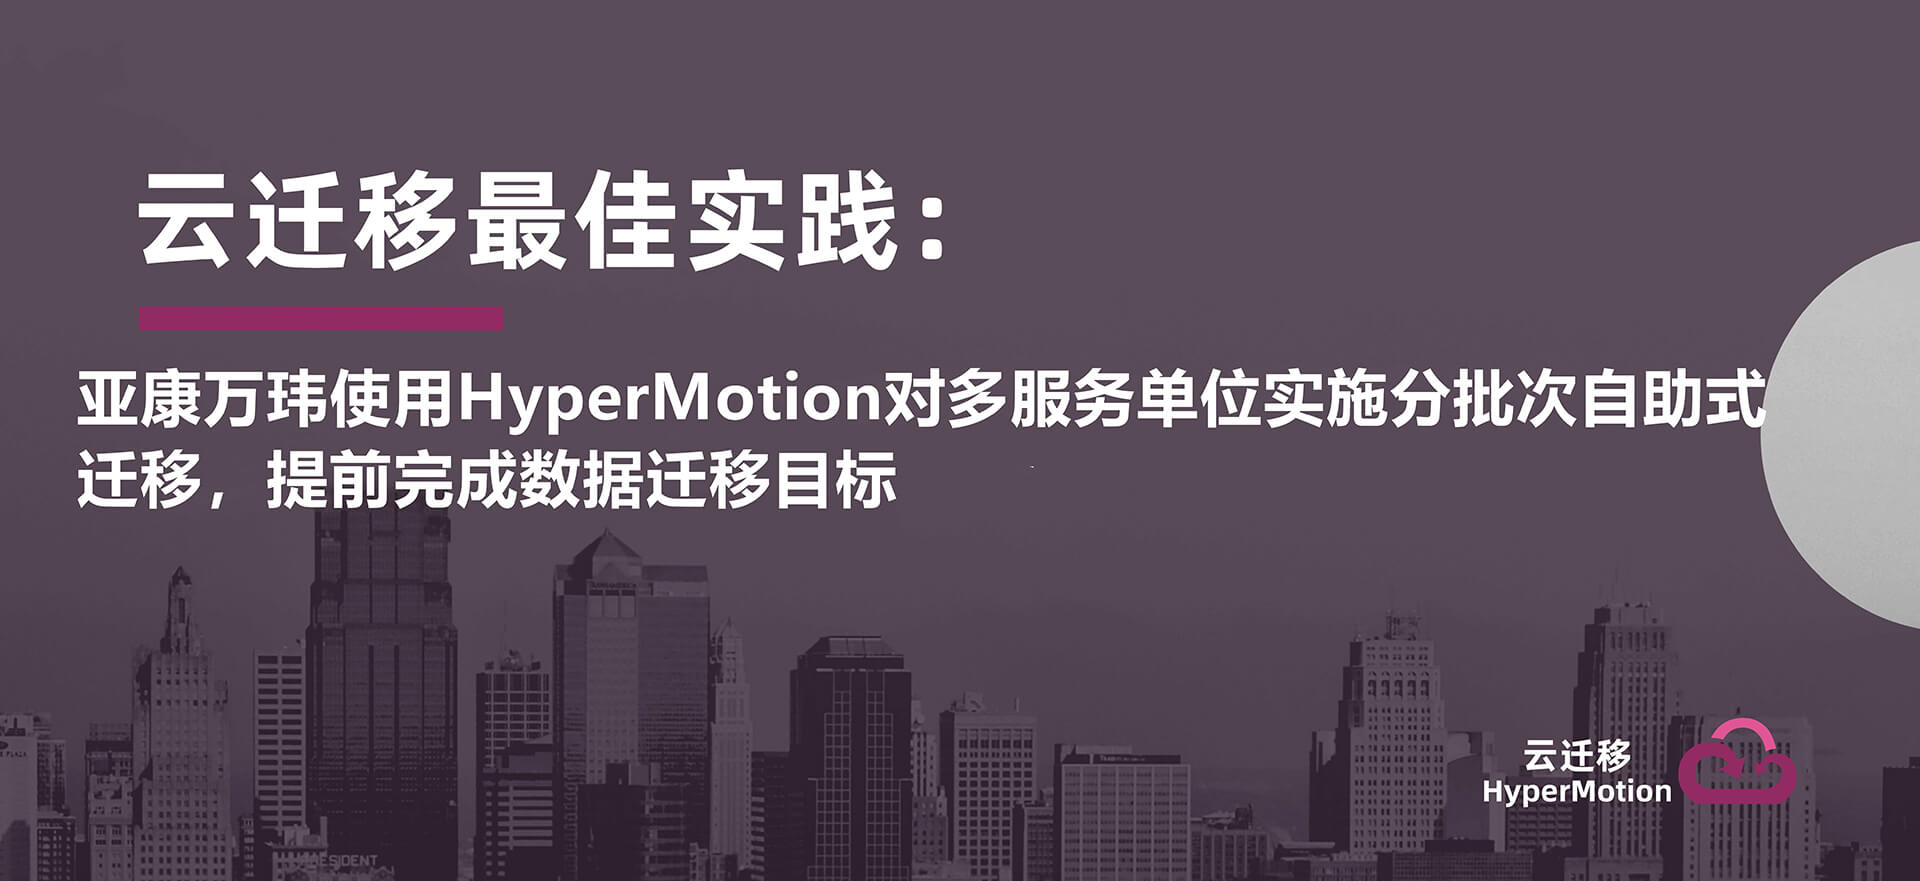 亚康万玮使用HyperMotion对多服务单位实施分批次自助式迁移，提前完成数据迁移目标